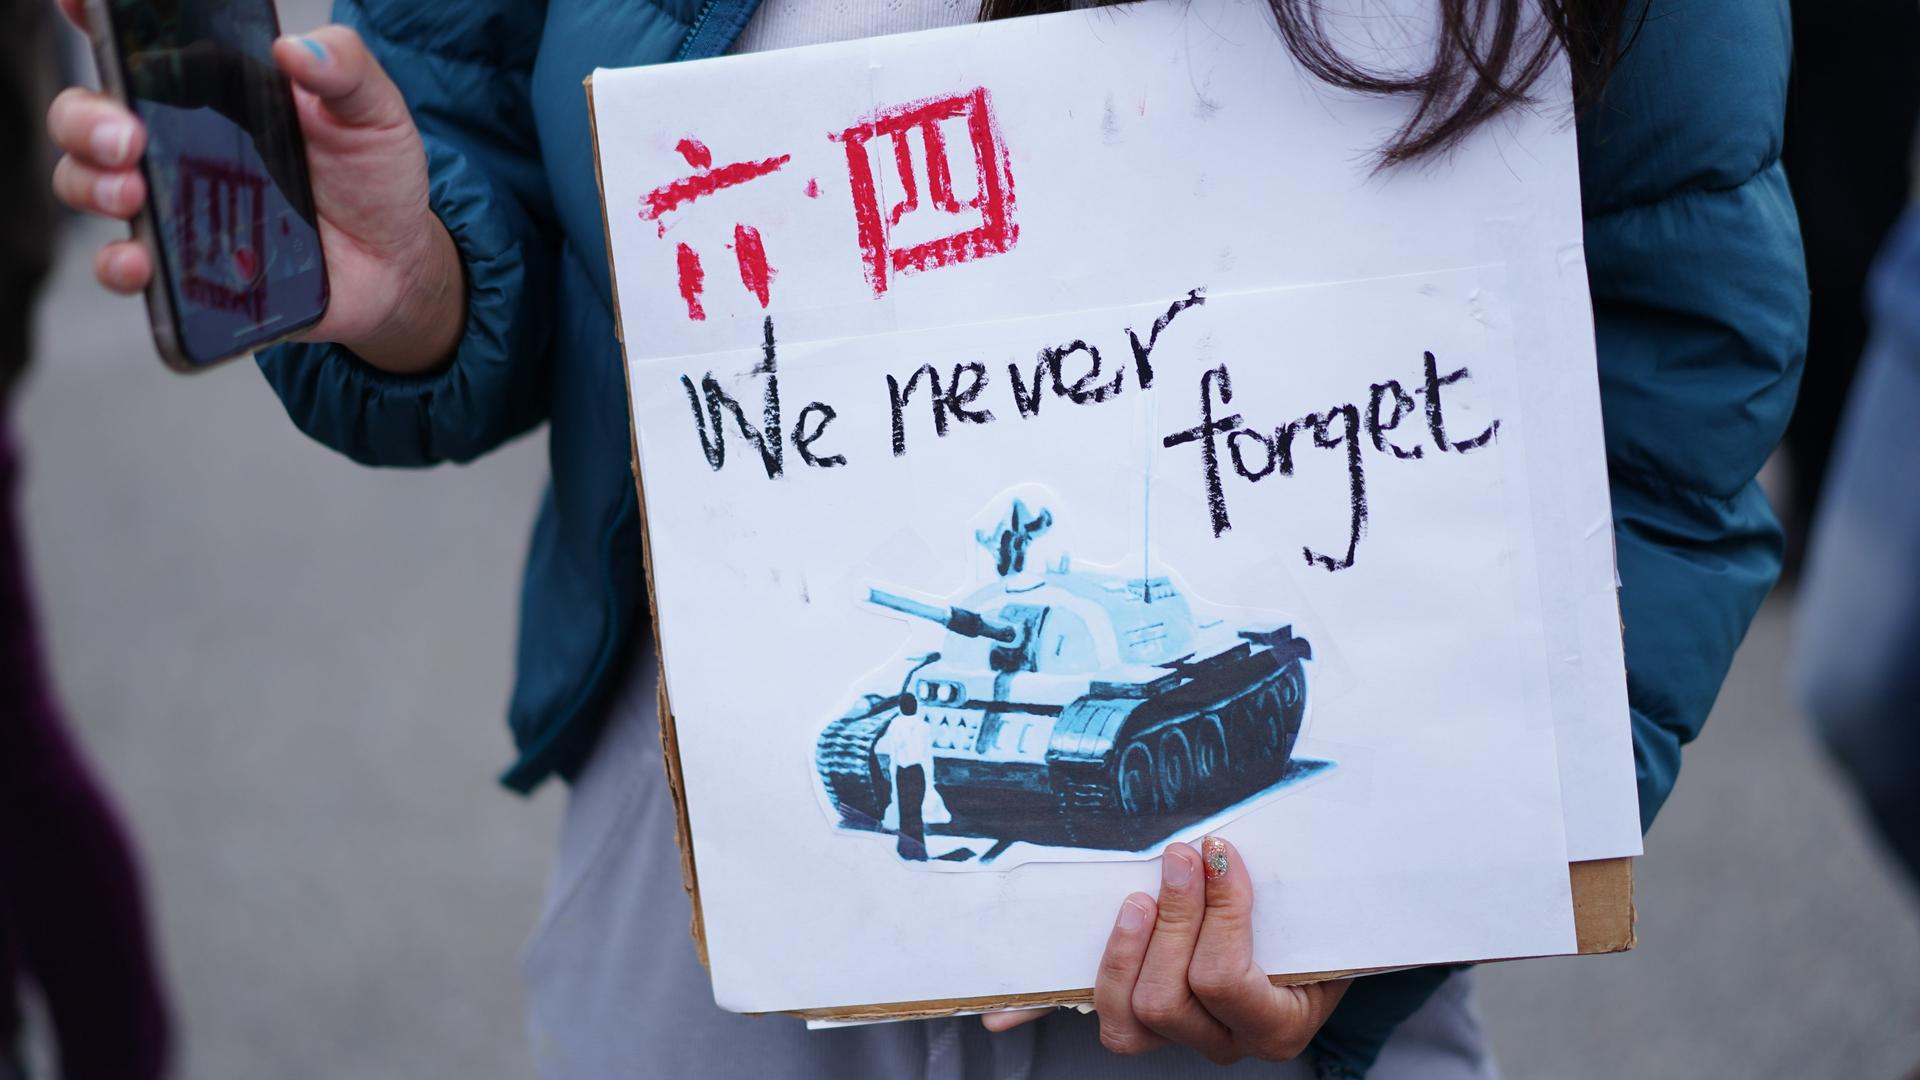 Bei einer Kundgebung zum Tiananmen-Massaker in San Francisco hält eine Demonstrierende ein Plakat mit der Aufschrift "We never forget" in den Händen.